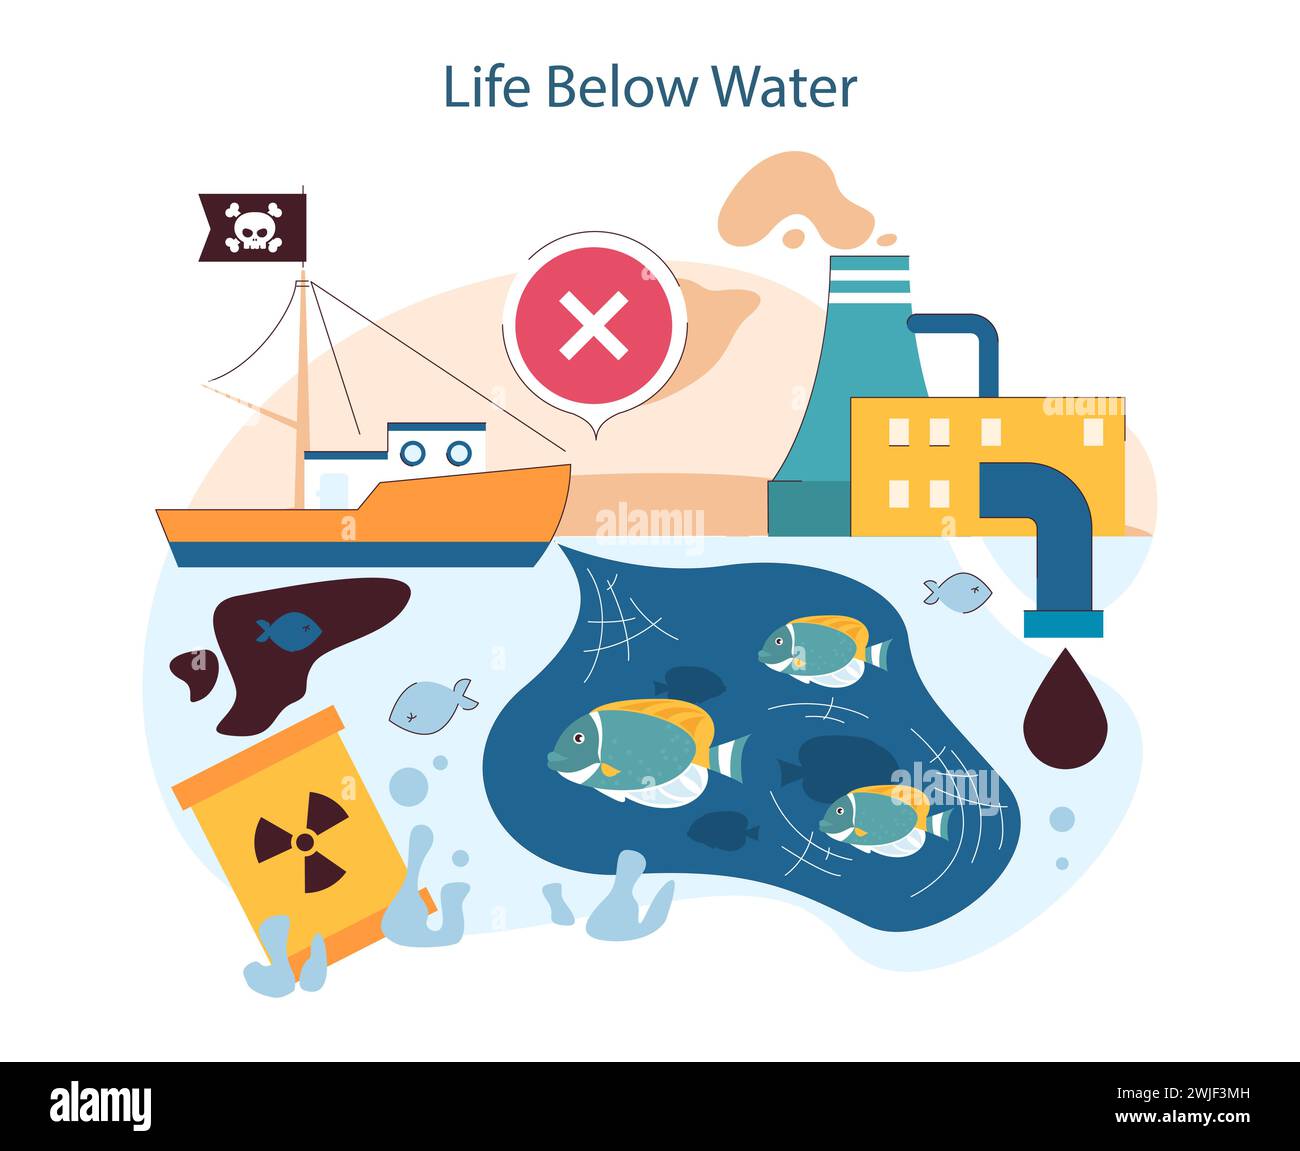 Leben Unter Wasser. Förderung der Erhaltung der Meeresverschmutzung und der Verminderung der Meeresverschmutzung zum Schutz aquatischer Ökosysteme. Illustration des flachen Vektors Stock Vektor